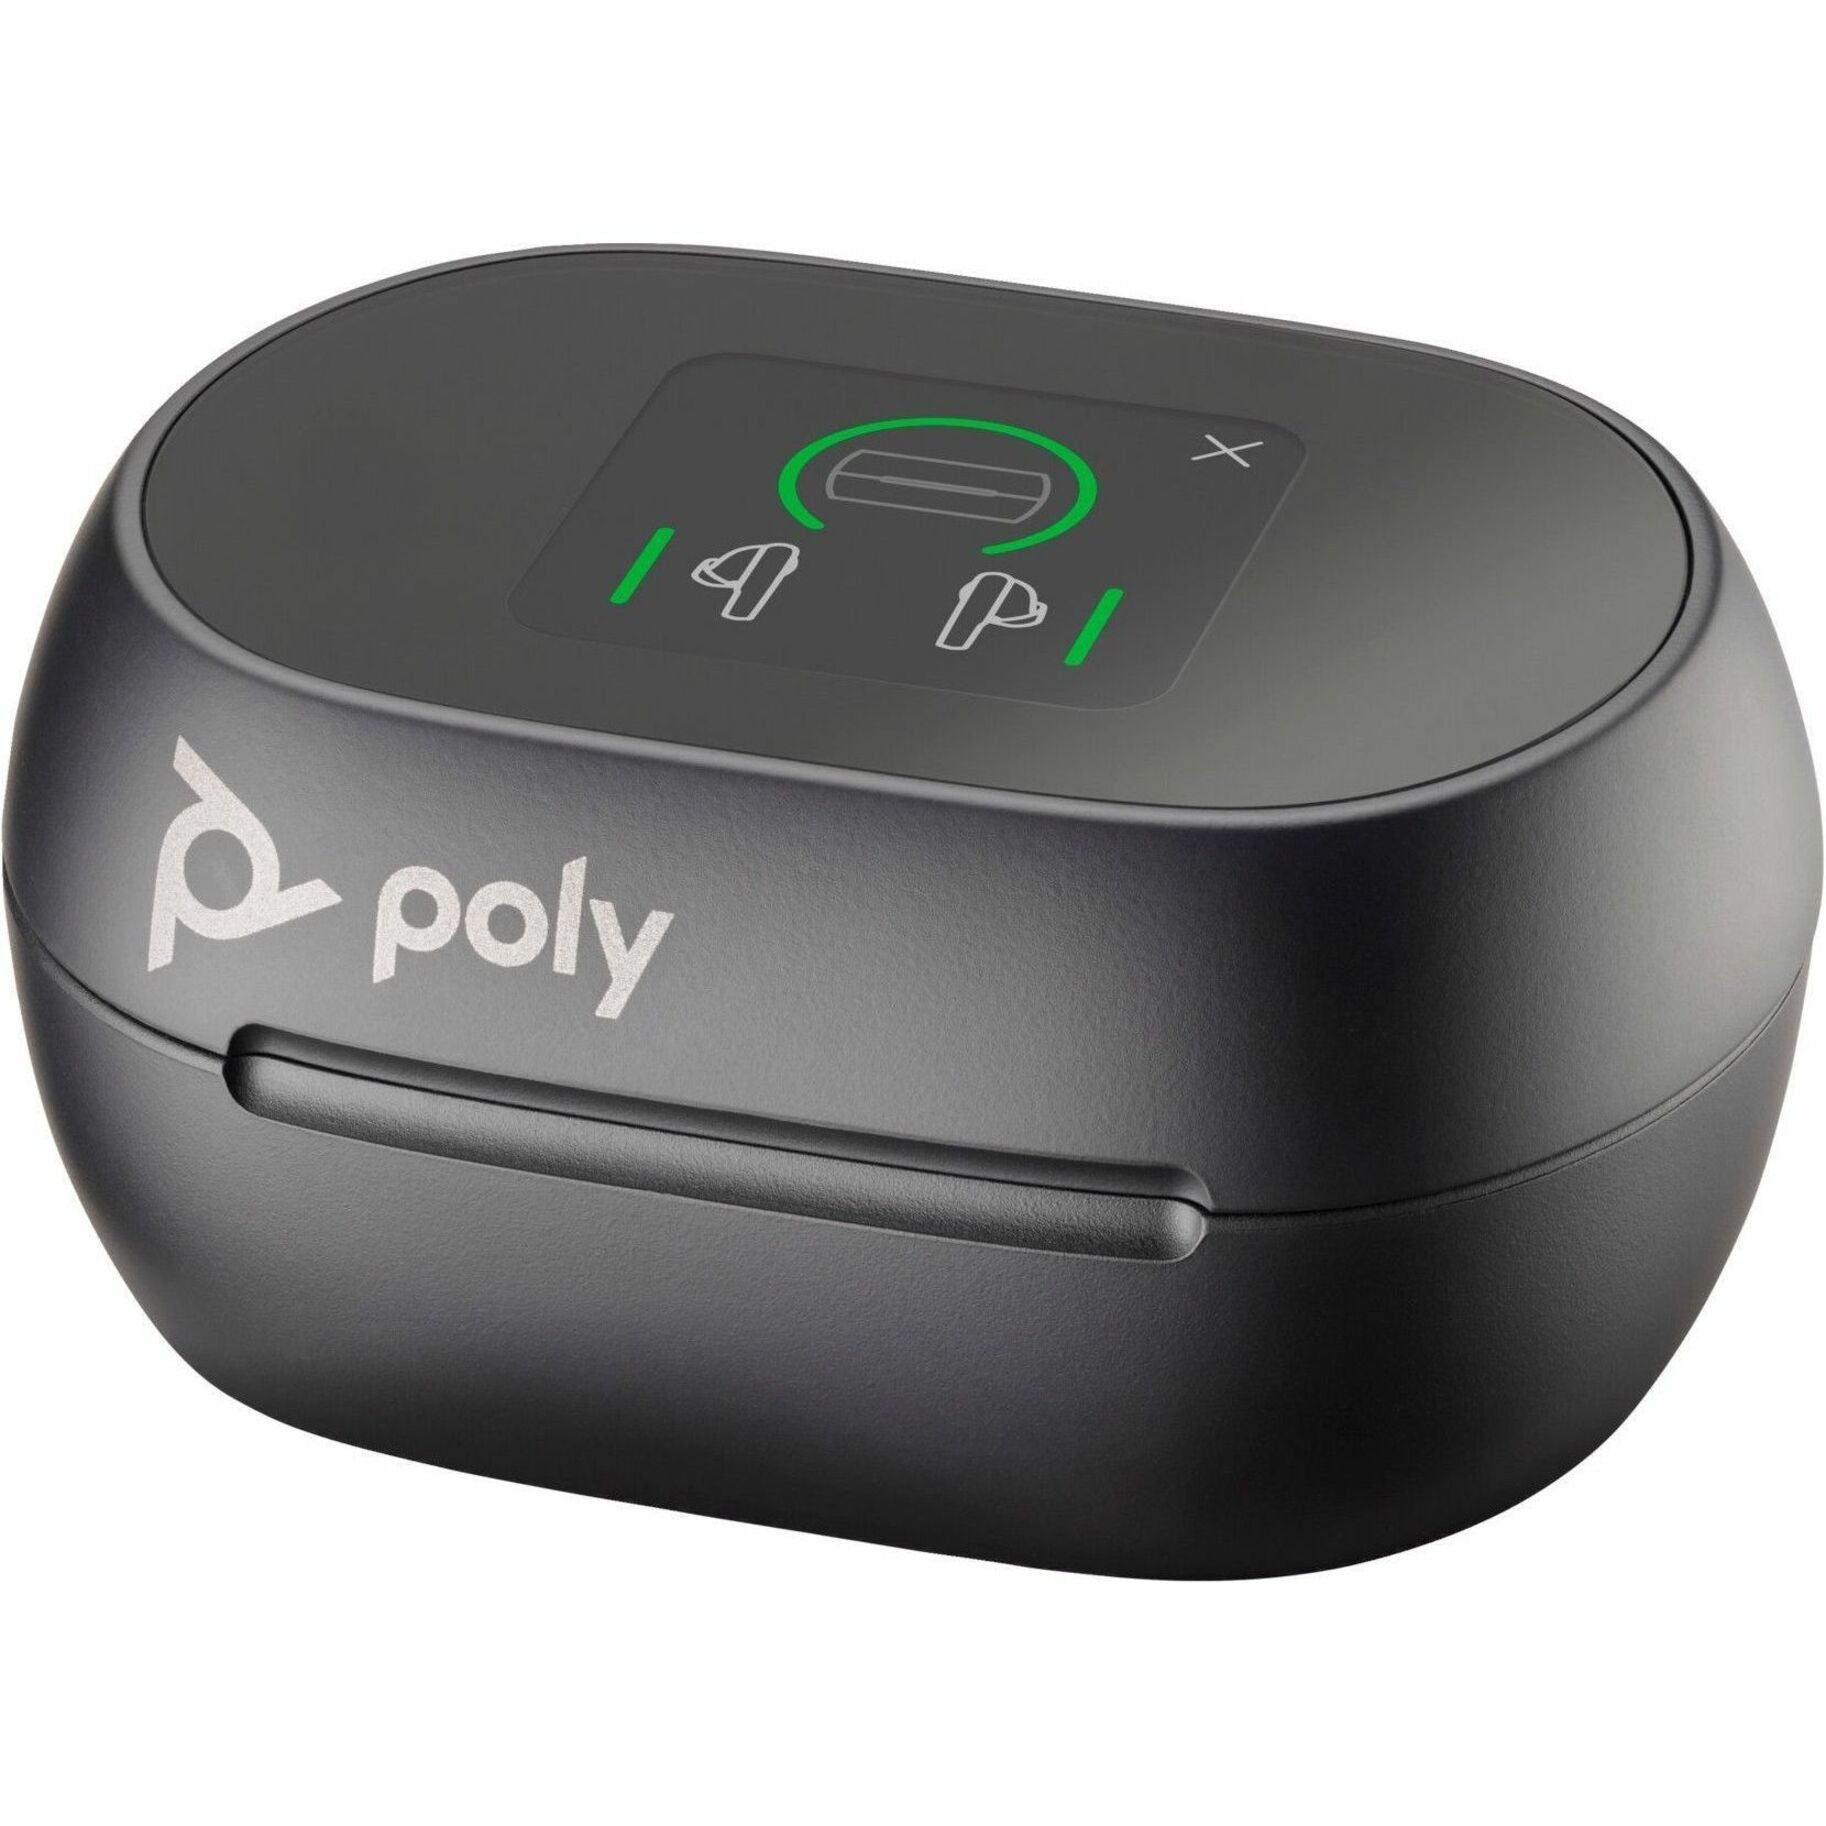 ポリ 7Y8G9AA ボイジャー フリー 60+ UC イヤーセット、ワイヤレス Bluetooth イヤボタン 2年間保証、軽量で快適、カーボンブラック  ブランド名: ポリ (Poly)